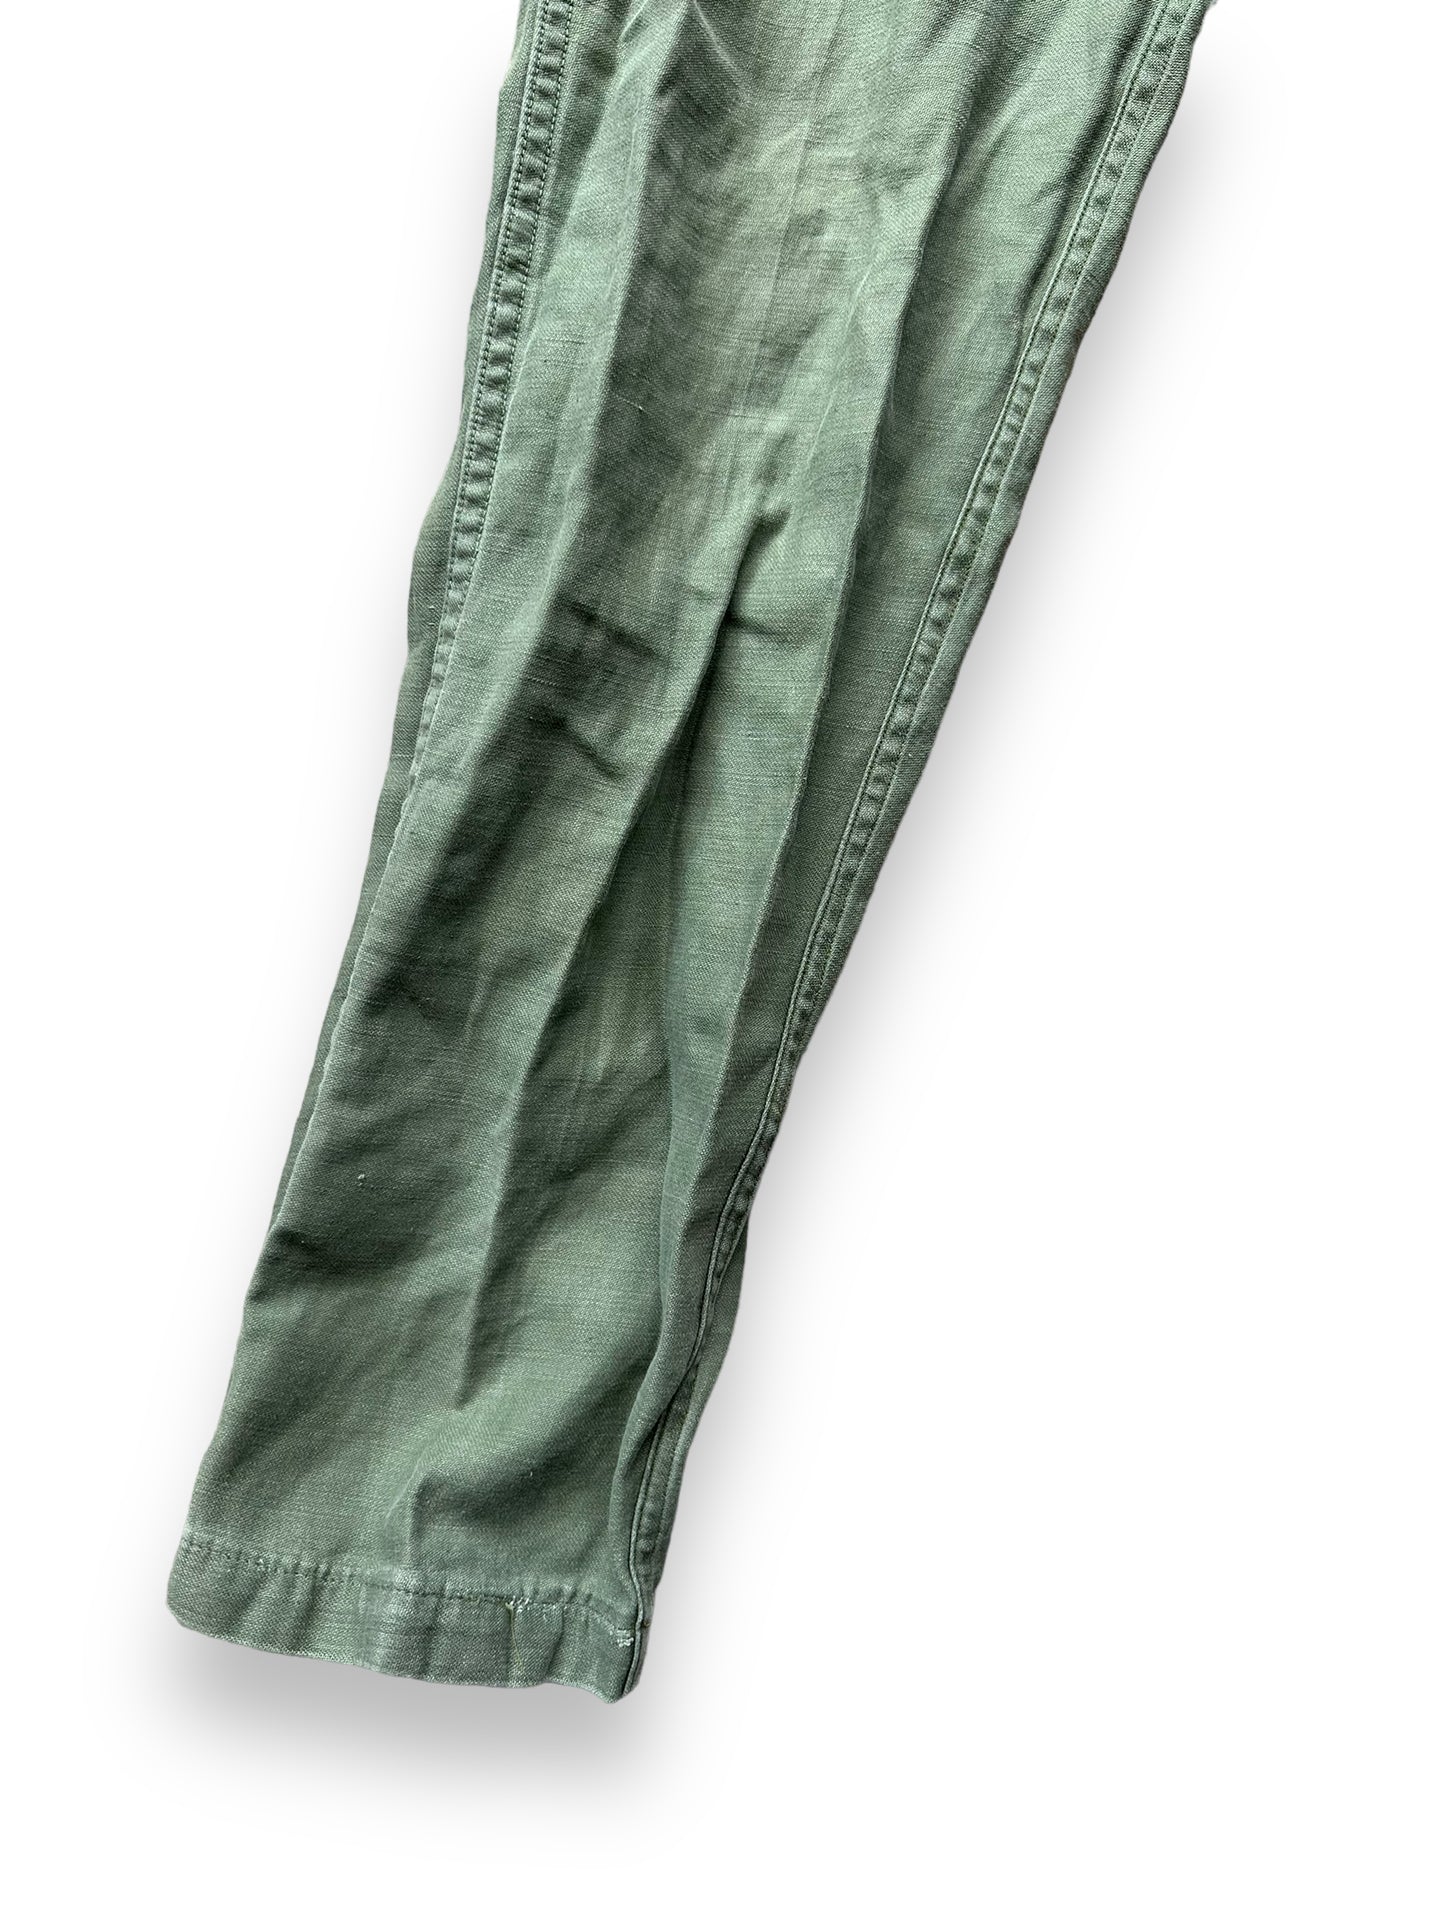 Right Front Leg on Vintage Sateen OG-107's W30 L32.5 | Vintage Viet Nam Era Baker Pants Seattle | Barn Owl Vintage Workwear